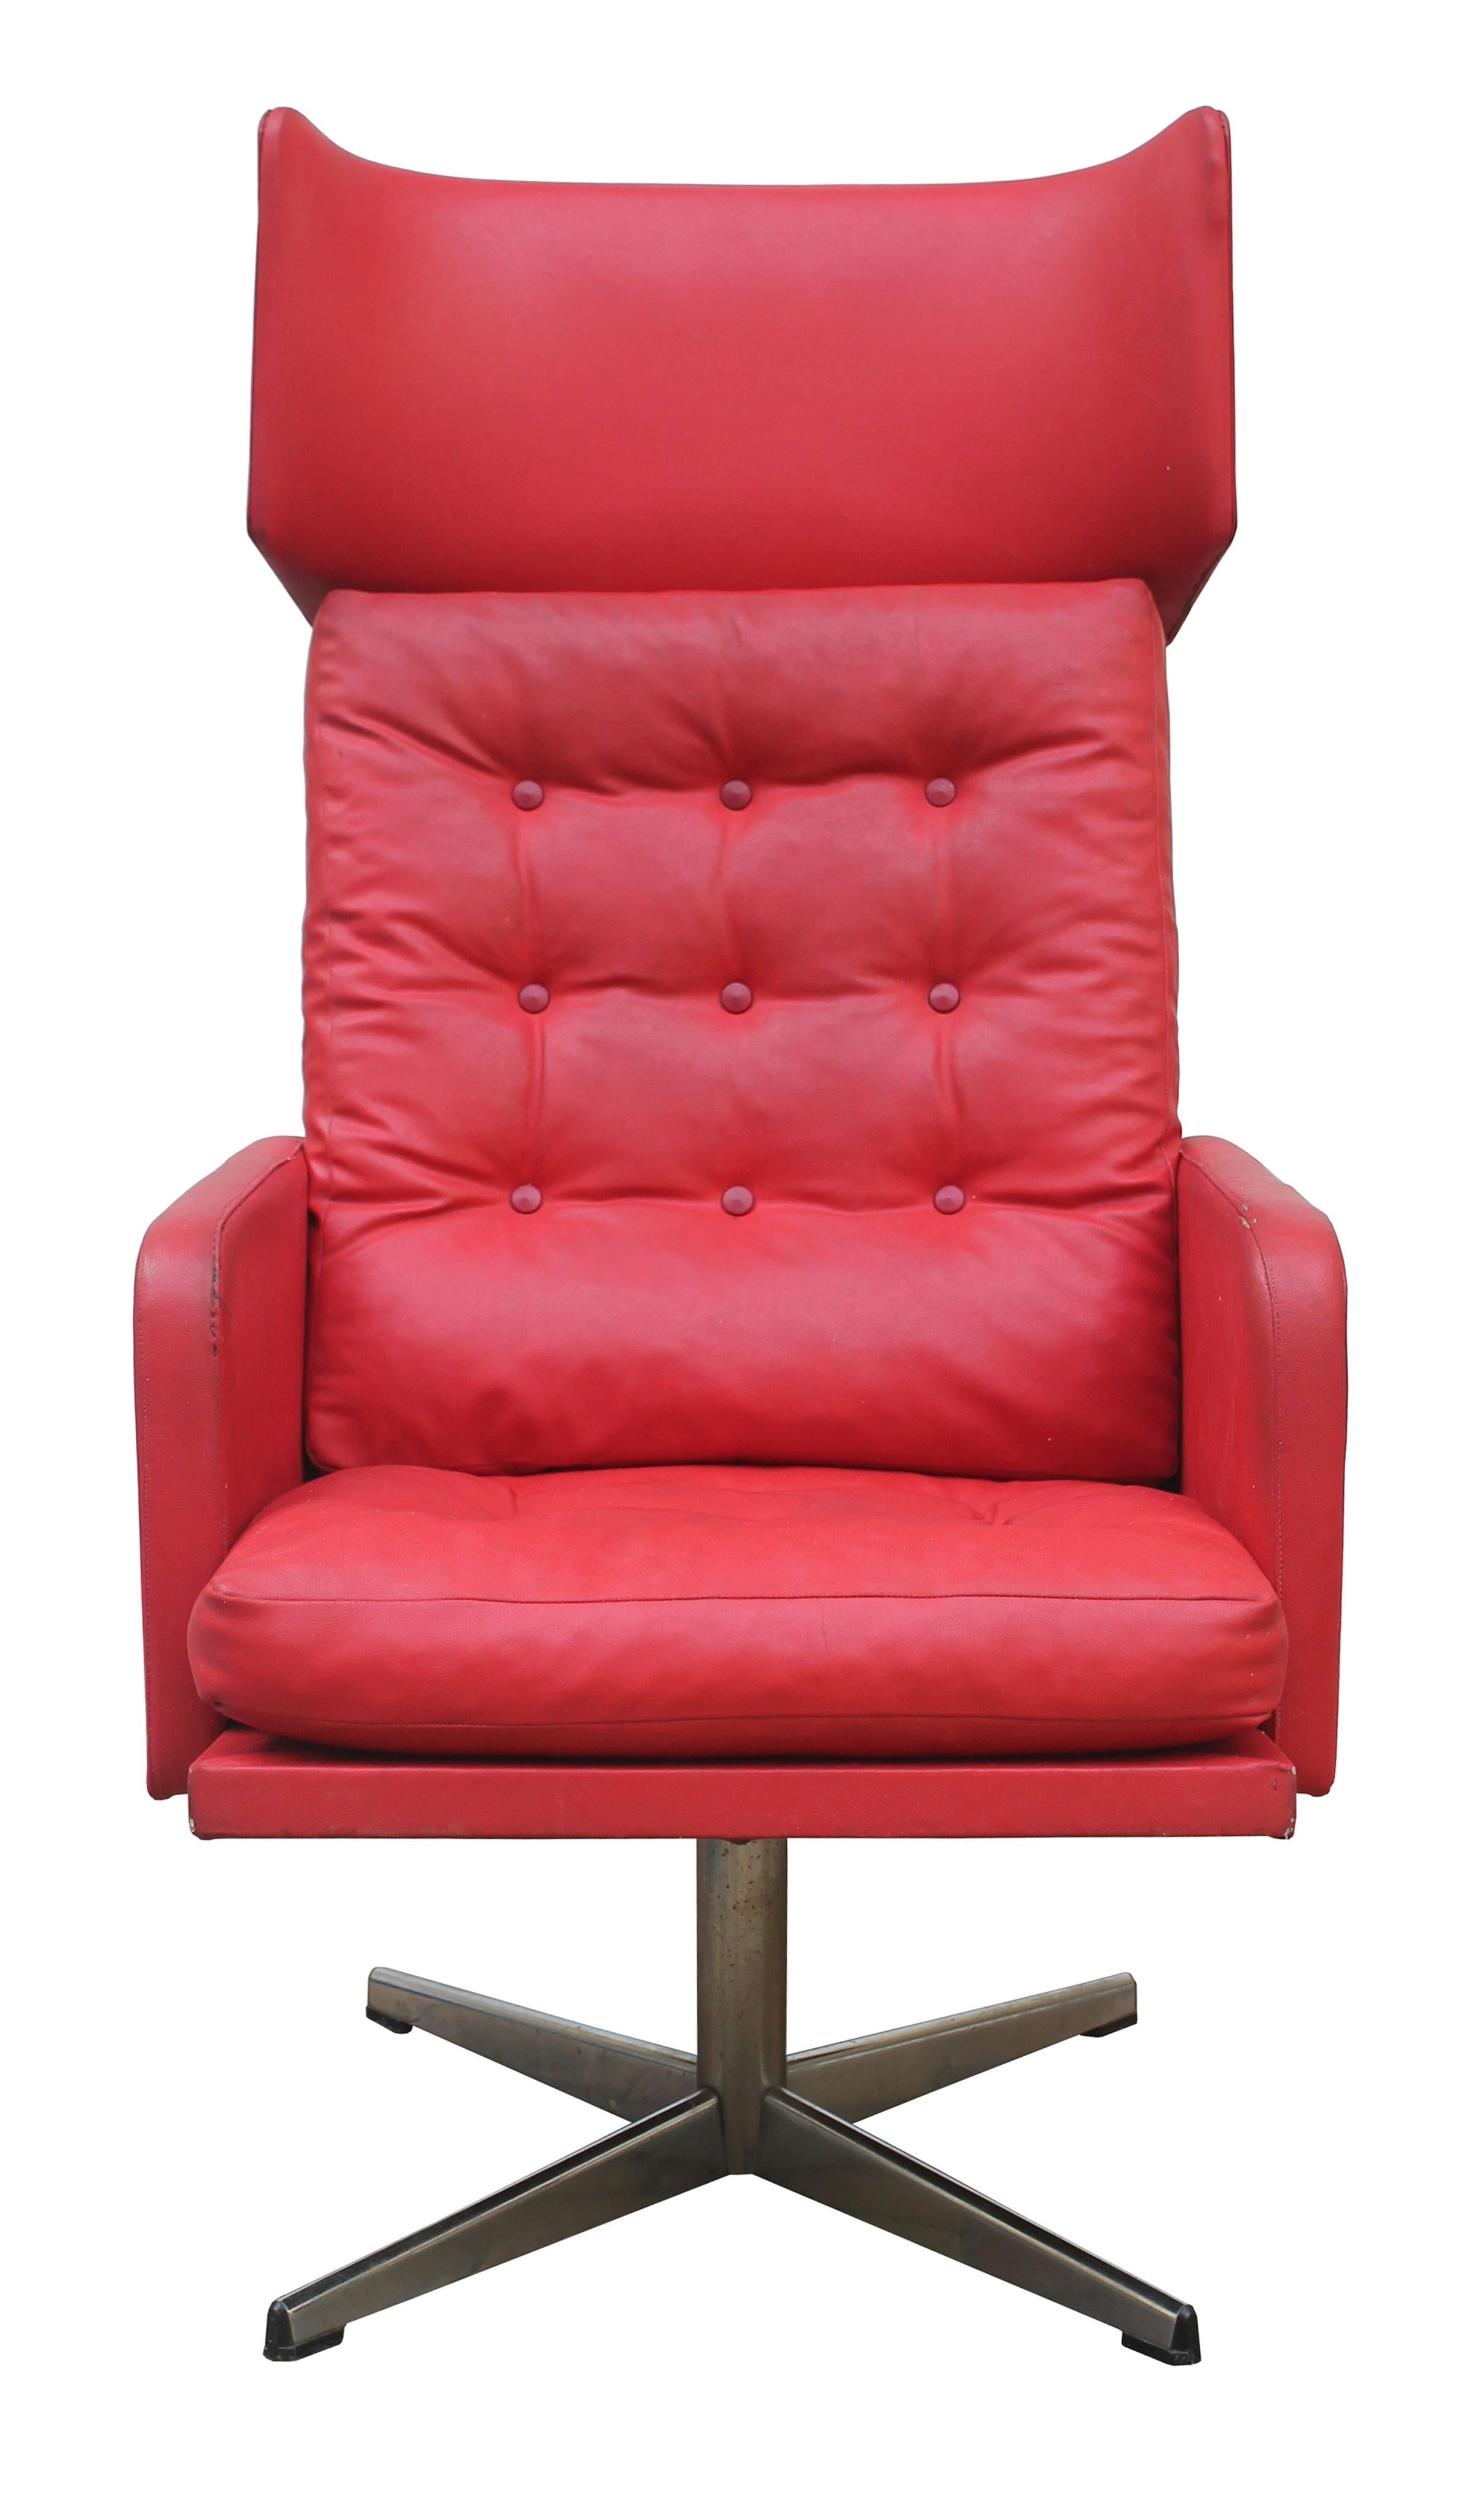 Audacieux et magnifique, ce fauteuil pivotant rouge vif est une touche de couleur bienvenue dans n'importe quel intérieur.

Fauteuil original des années 1970, fabriqué à l'époque du communisme tchécoslovaque. Cette pièce était considérée comme le